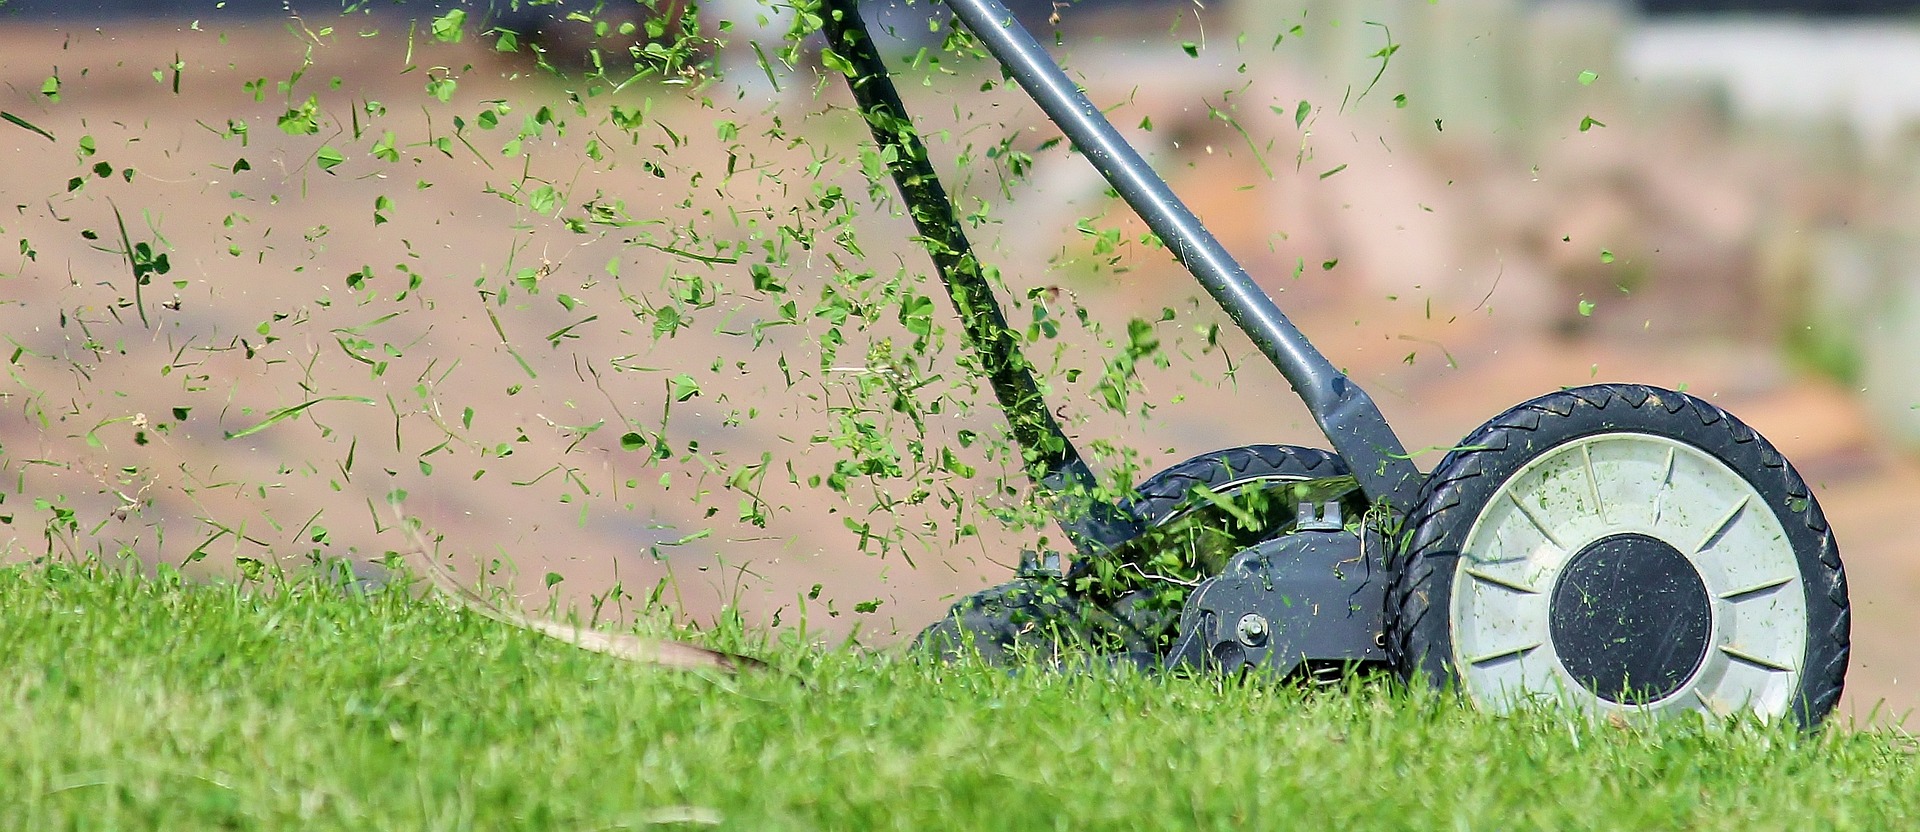 Wertykulator spalinowy Stiga – doskonałe narzędzie do pielęgnacji trawnika